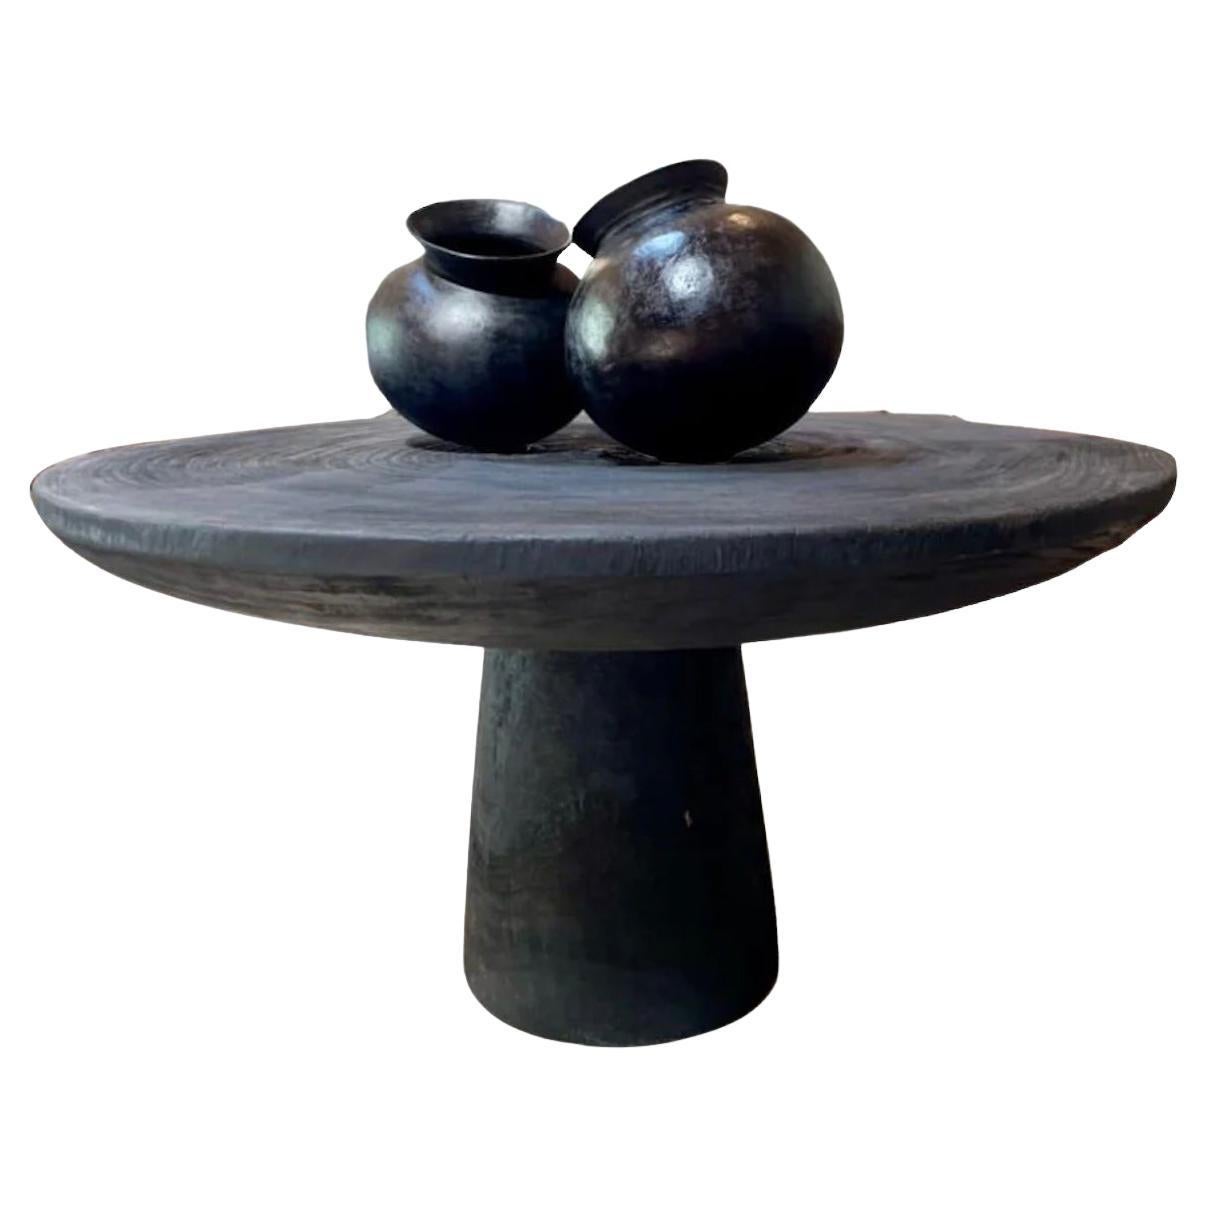 Runder Tisch aus Sumba-Holz von CEU Studio, vertreten von Tuleste Factory